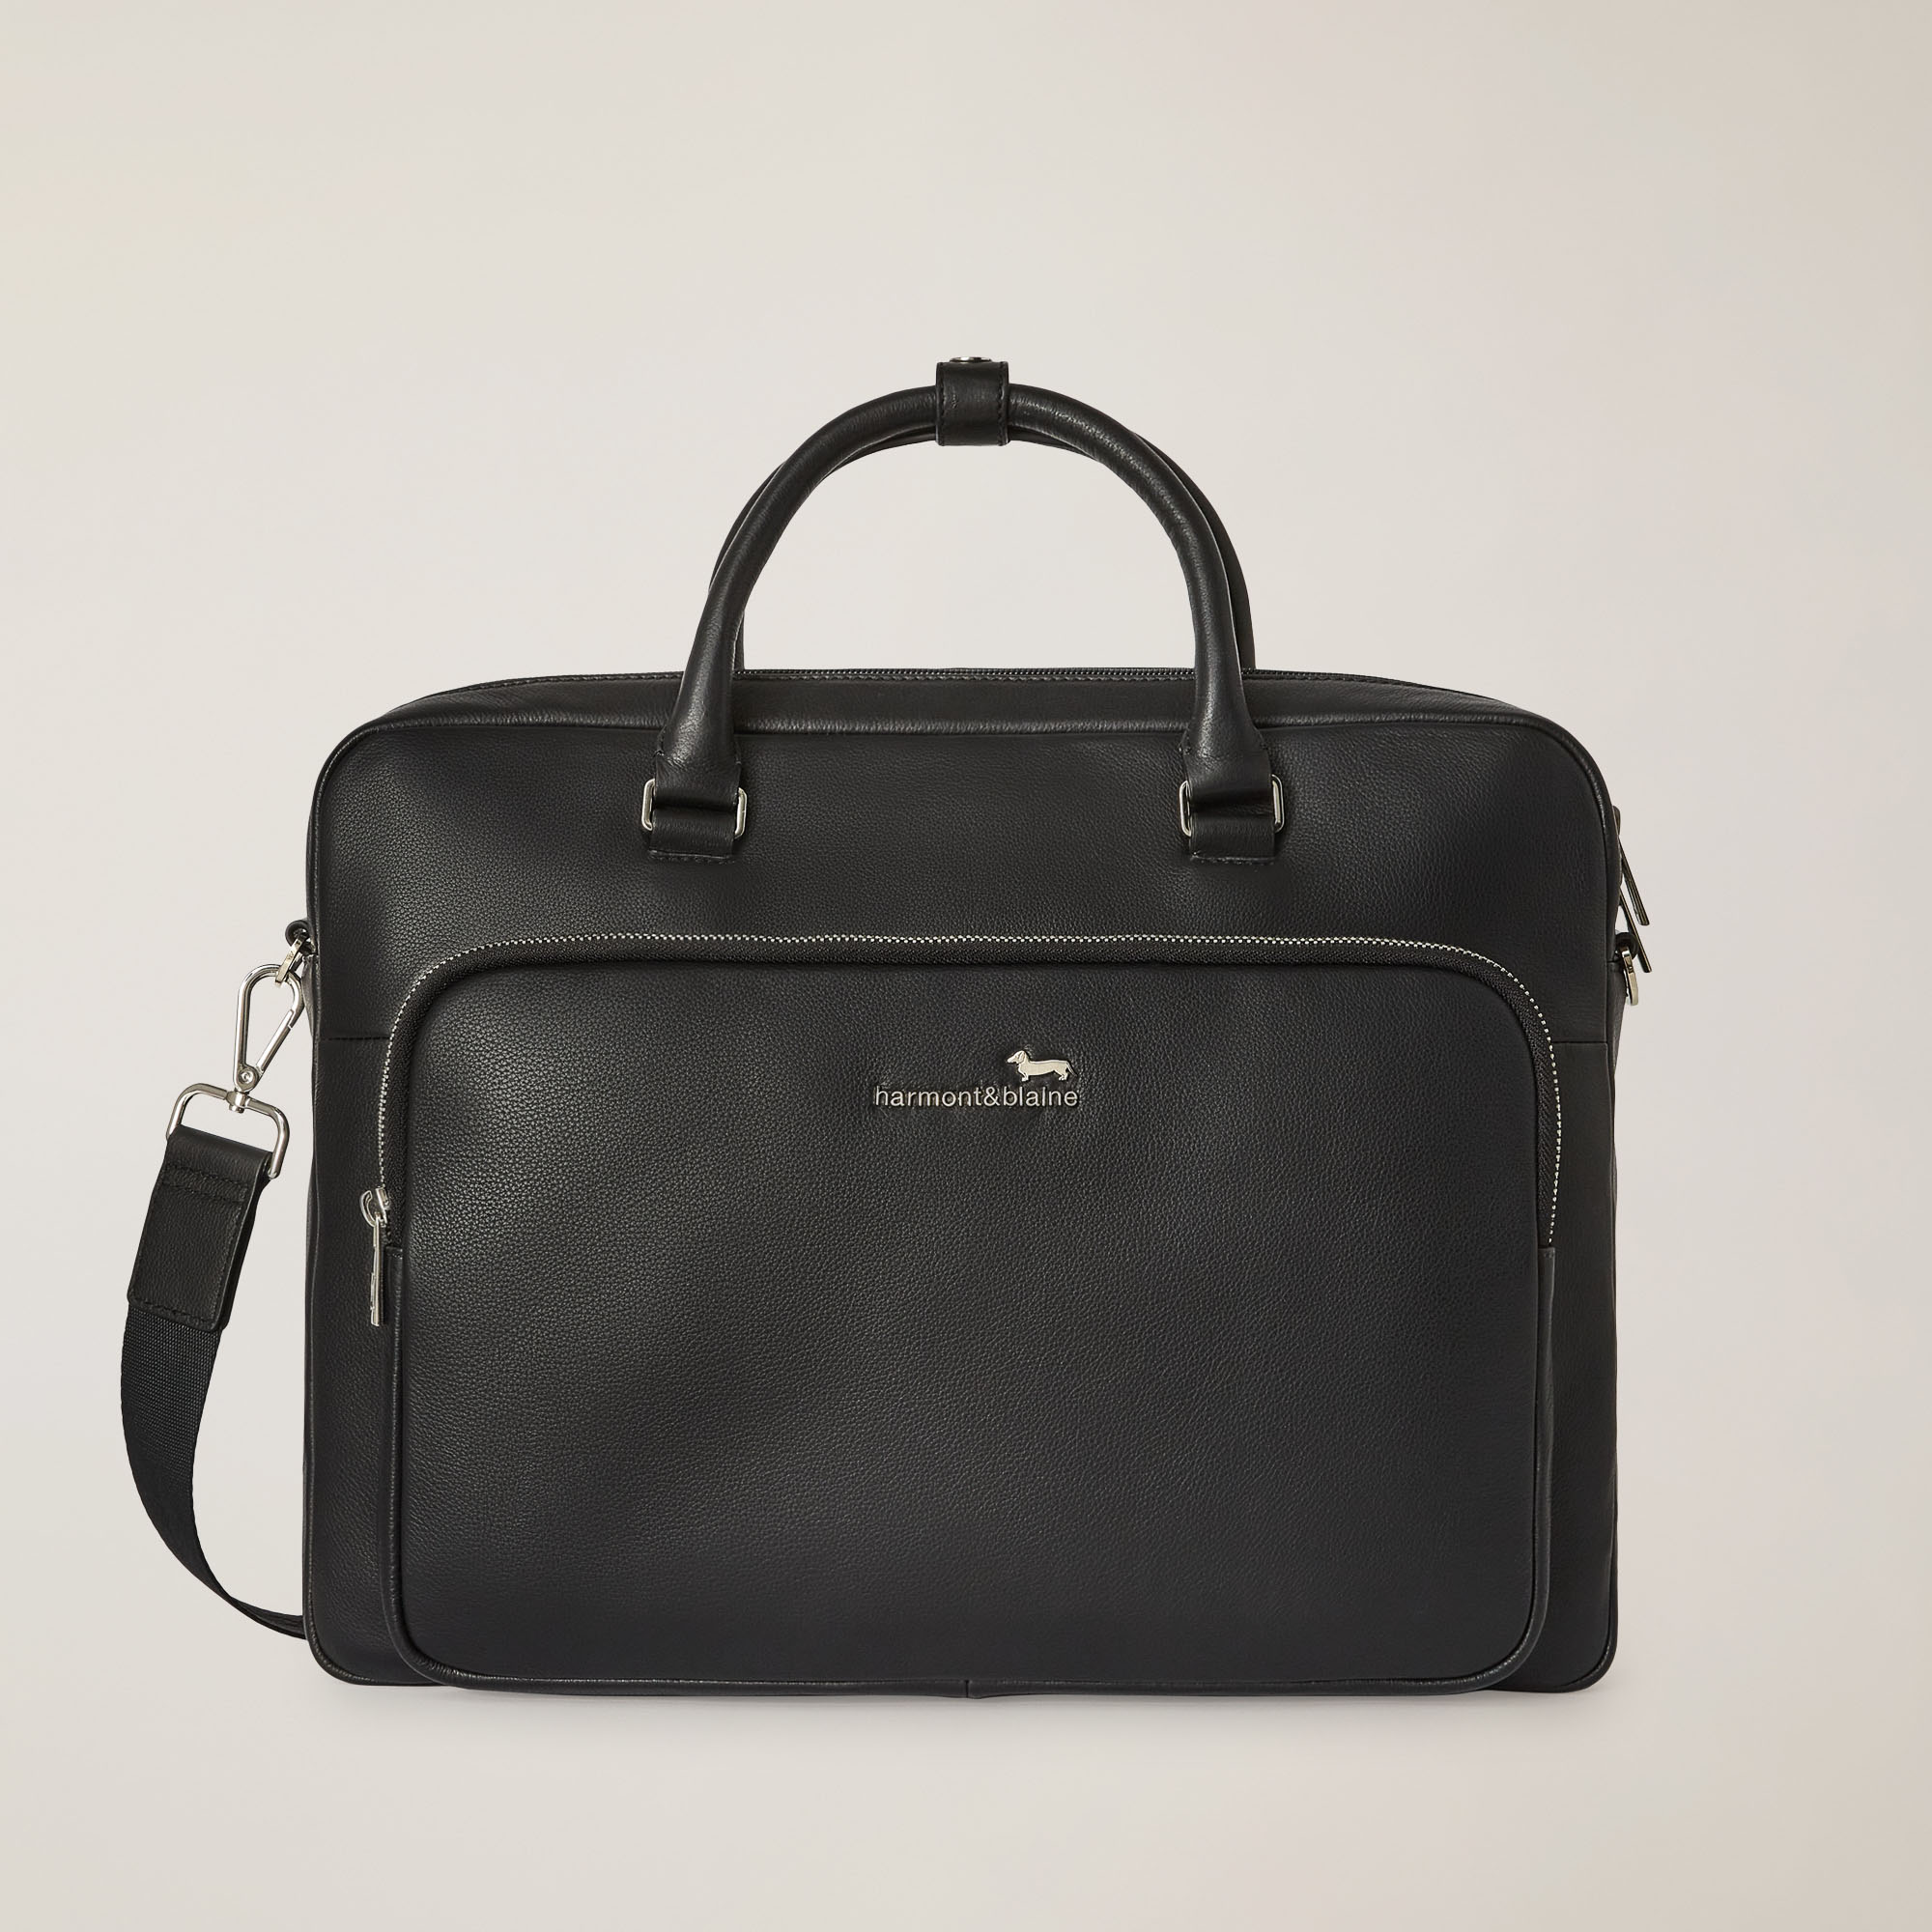 Business Bag, Black, large